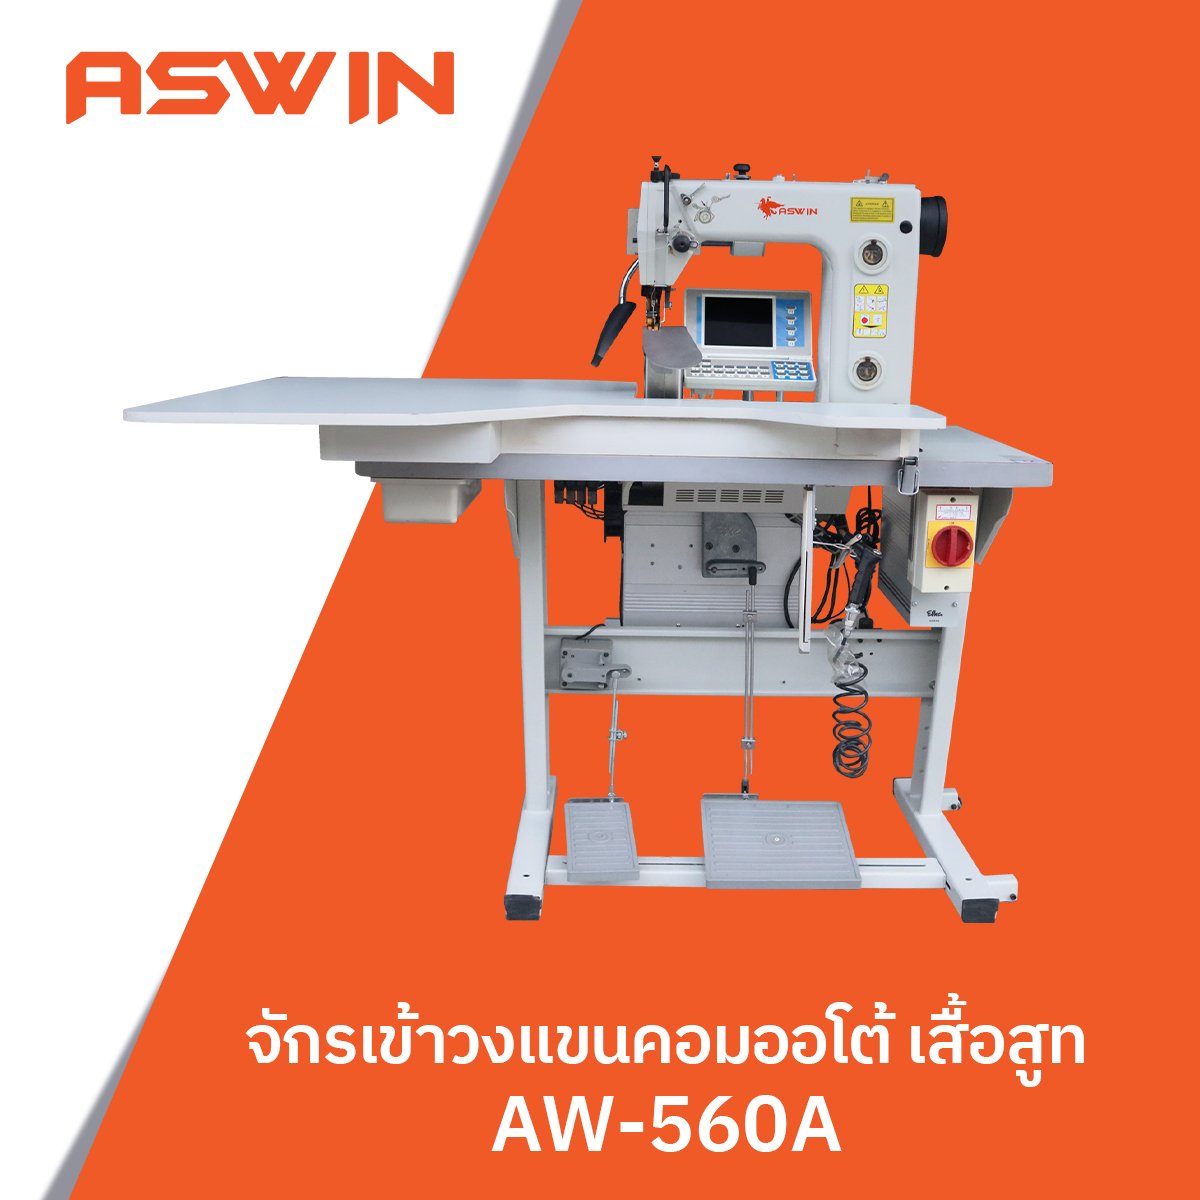 จักรเข้าวงแขนคอมออโต้ เสื้อสูท ASWIN รุ่น AW-560A